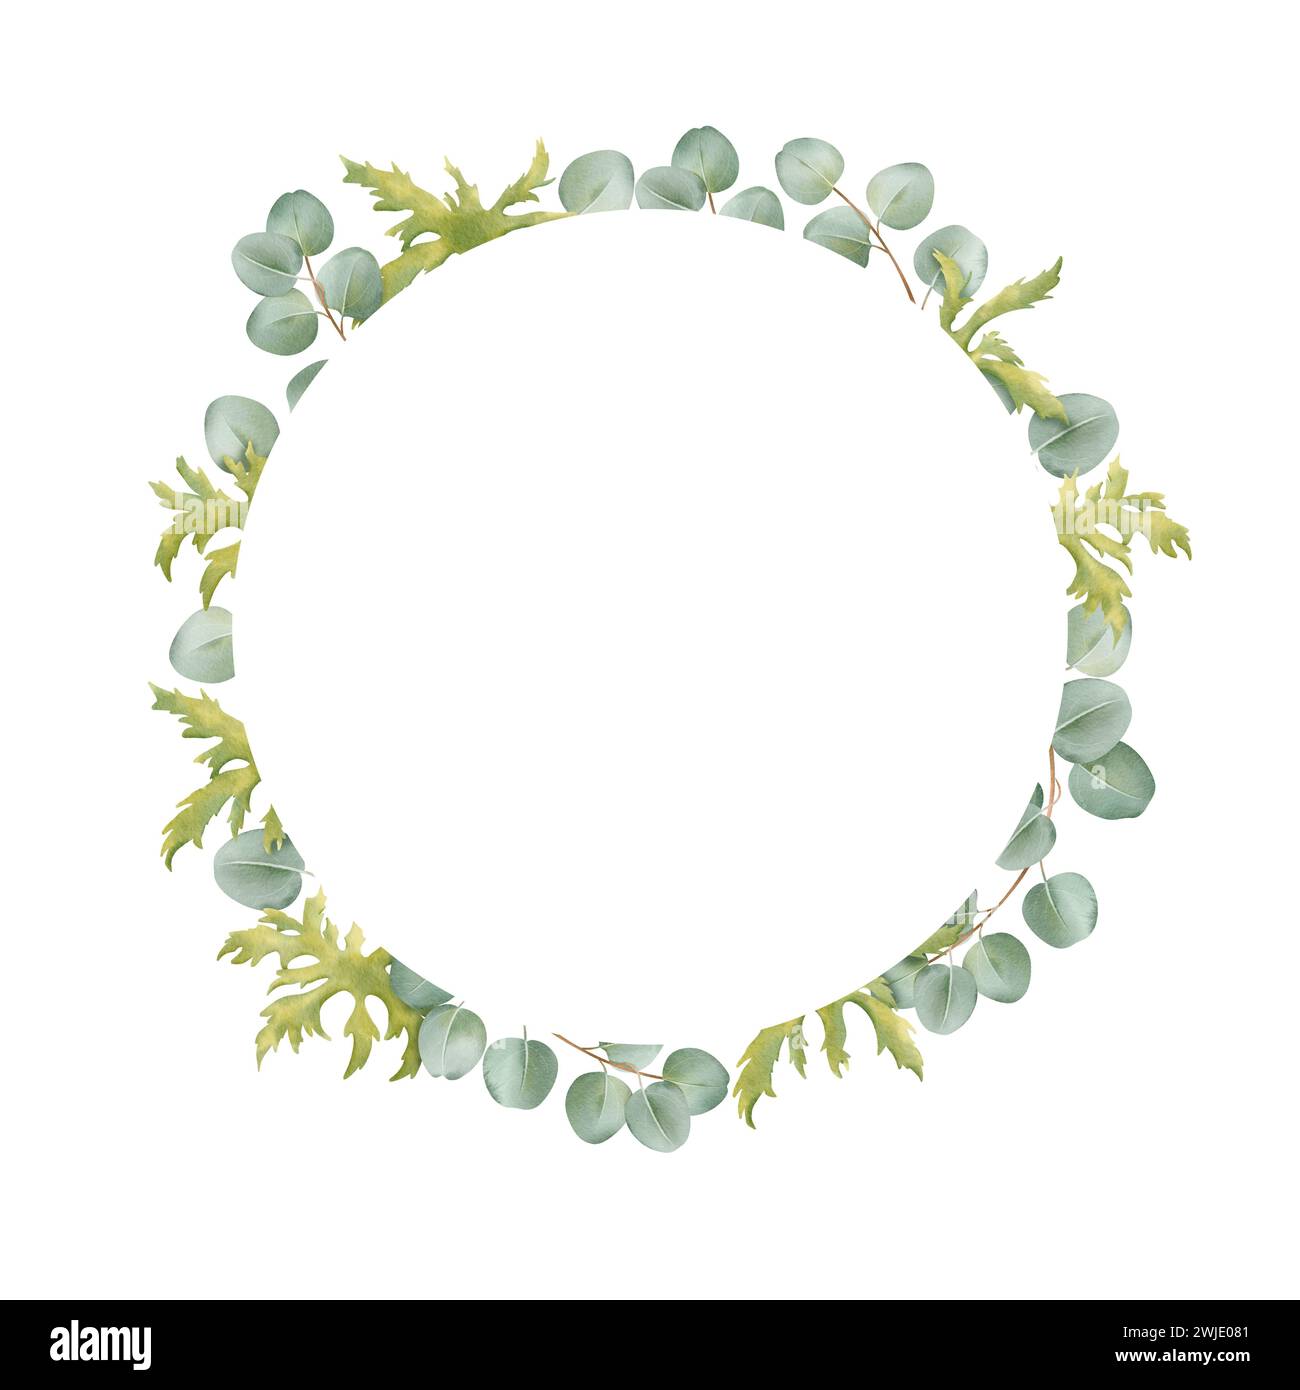 Ein minimalistischer kreisförmiger Rahmen aus Anemonenblättern und Eukalyptuszweigen. Für Einladungen, Grußkarten, Poster und Grafiken in sozialen Medien Stockfoto